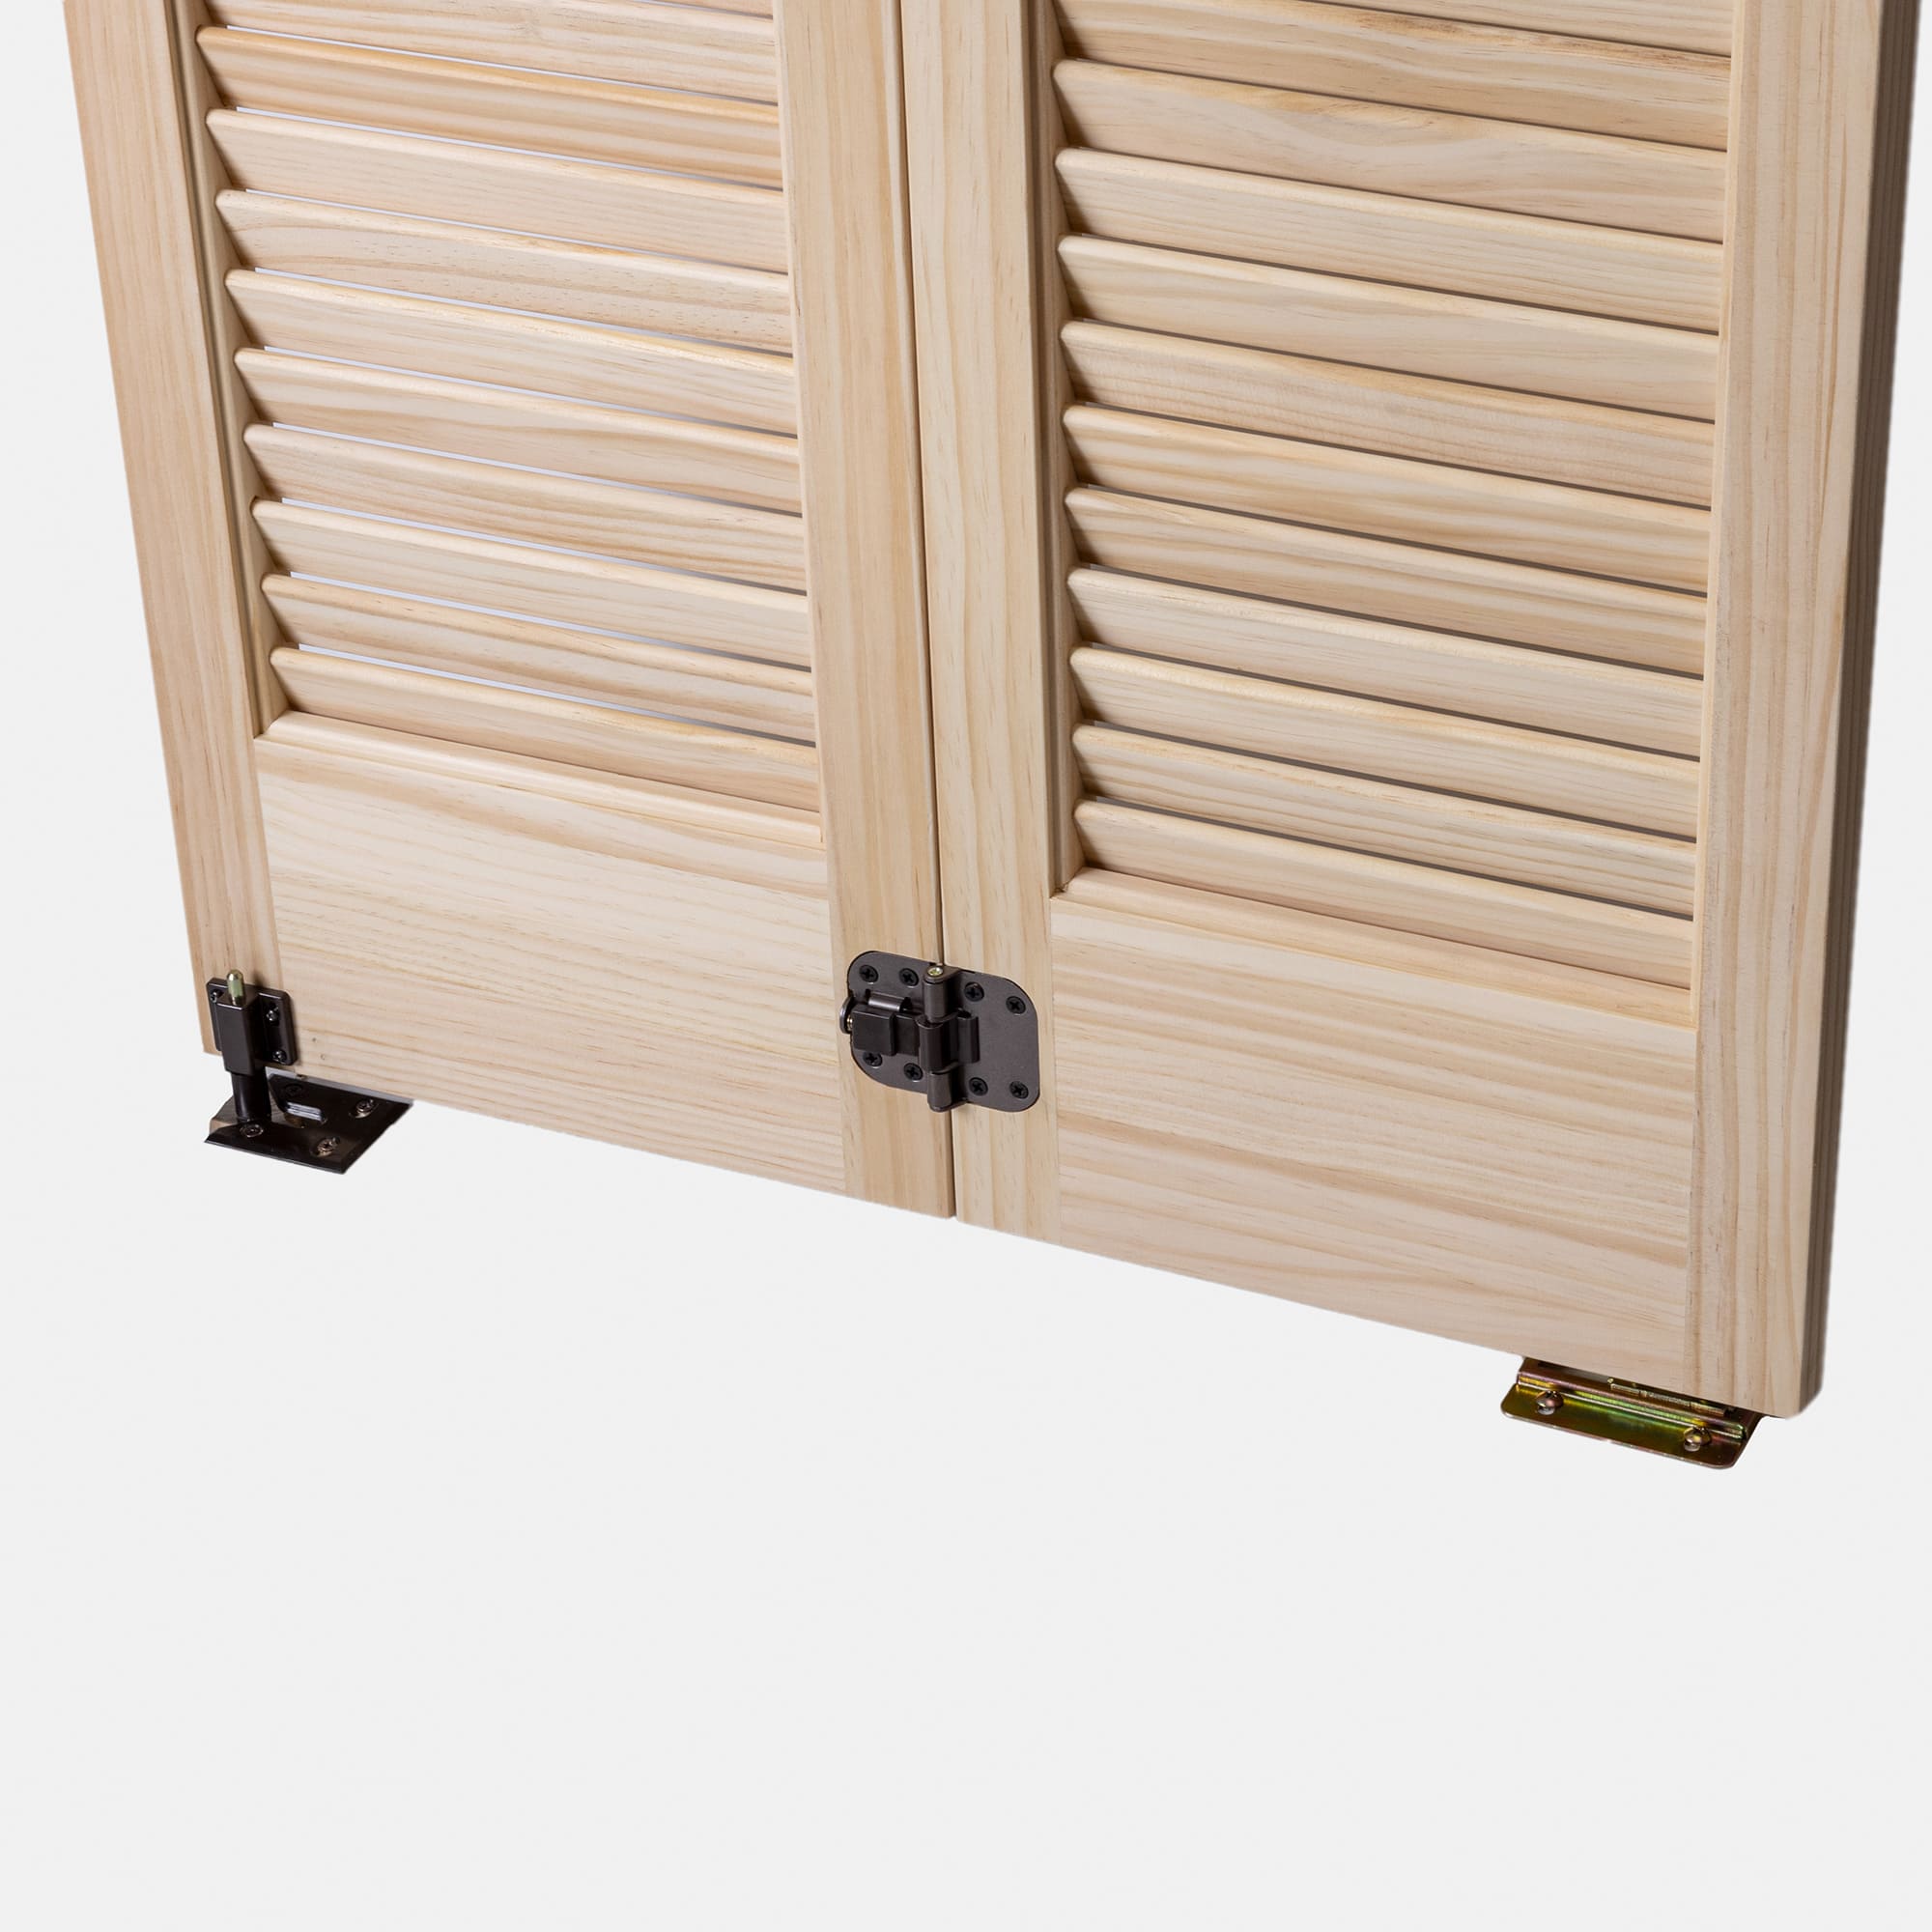 木製パインルーバー折れ戸 片開き 752×2007 DW-DR011-02-G111 扉の裏側。振れ止め、ボトムピボット受け金具が付属します